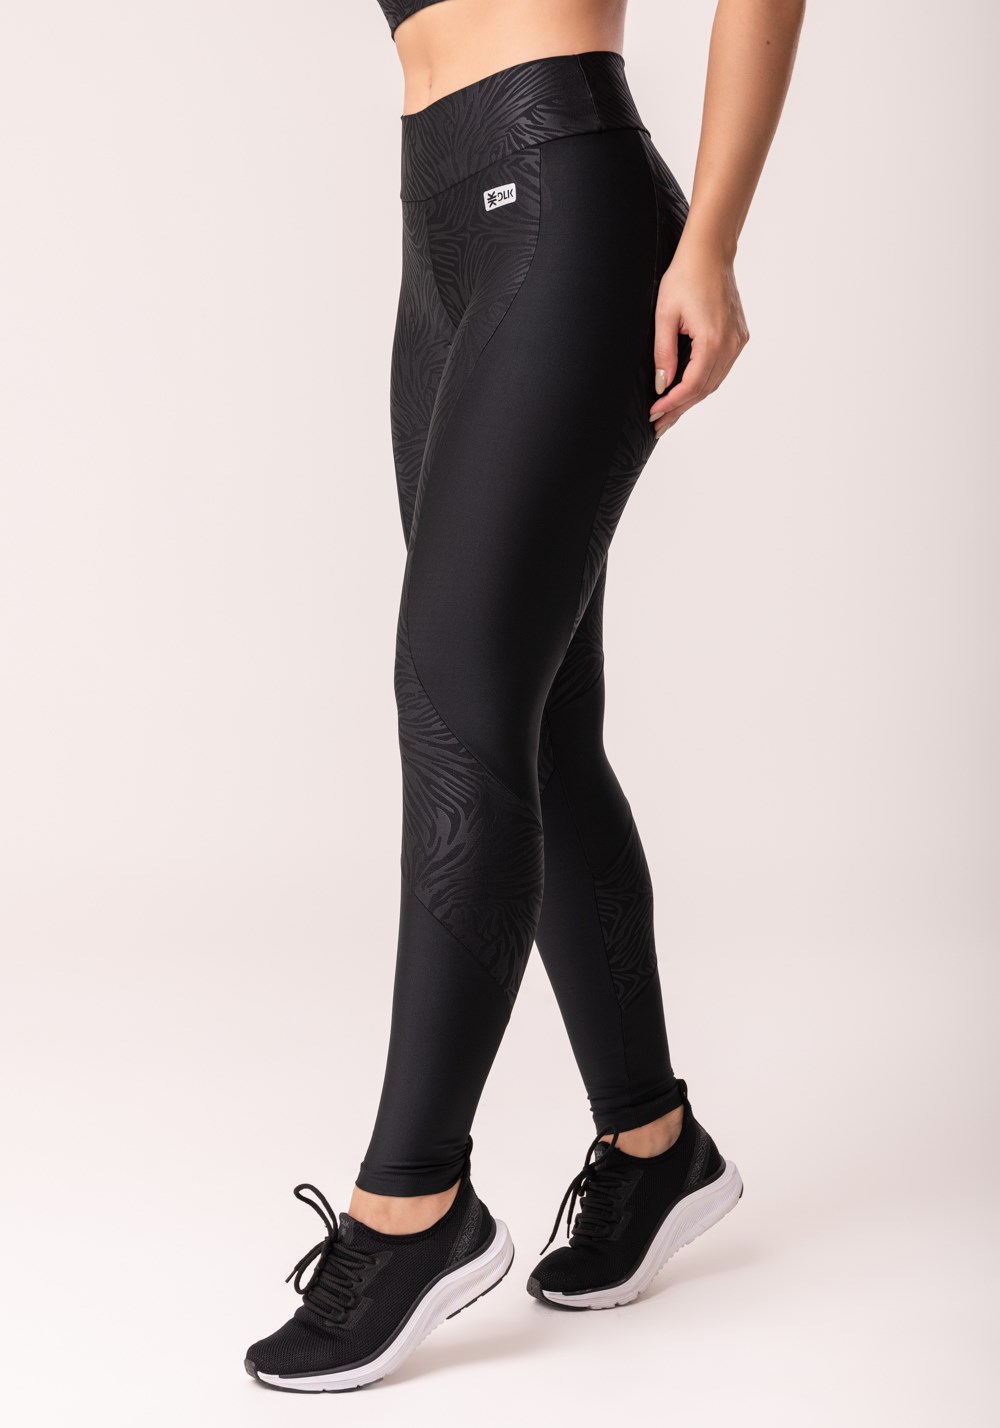 Calça legging shine preto texturizada com recortes